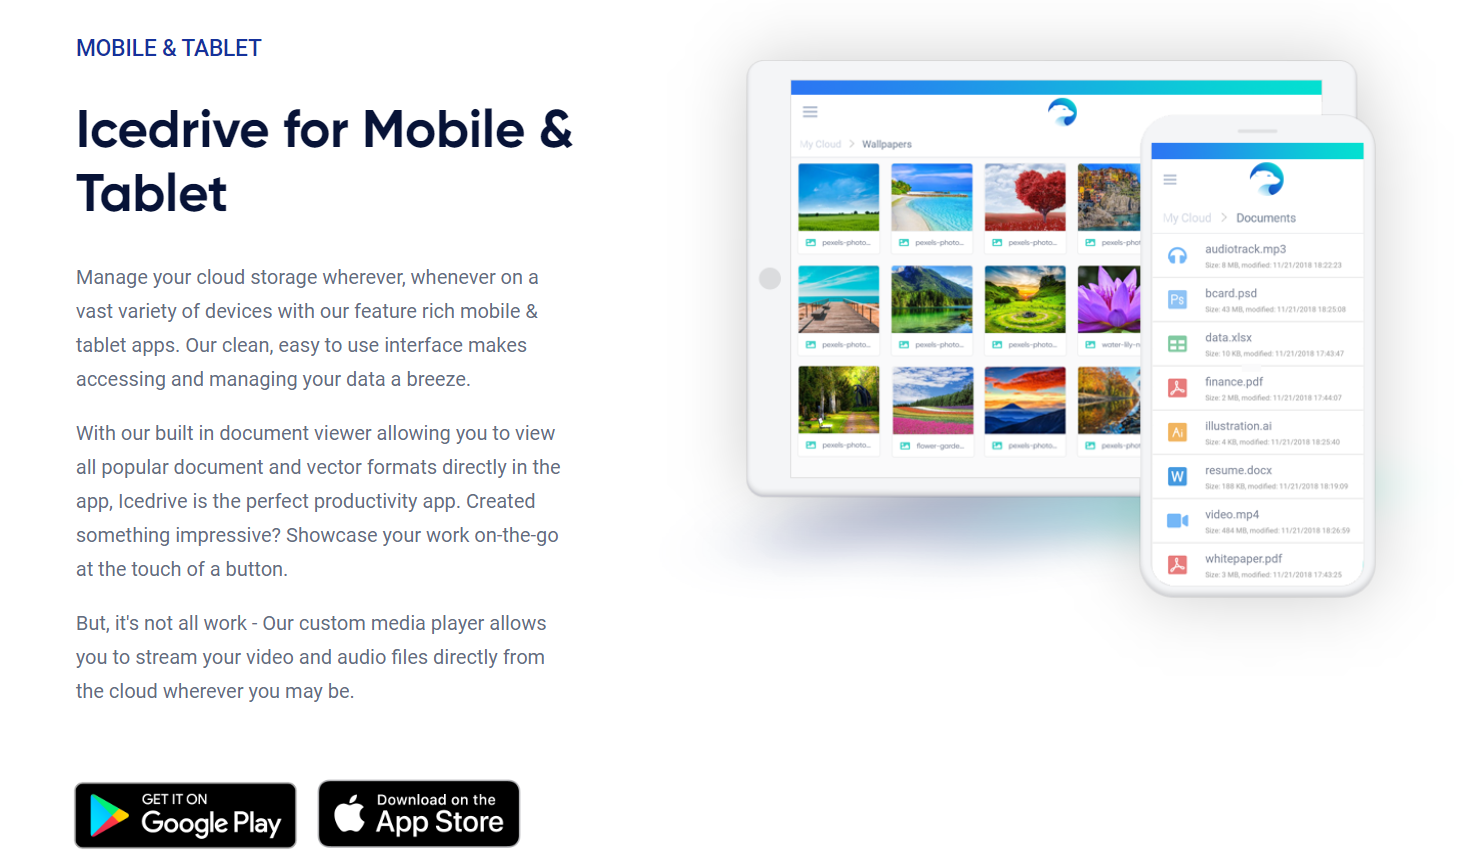 Applicazione mobile IceDrive